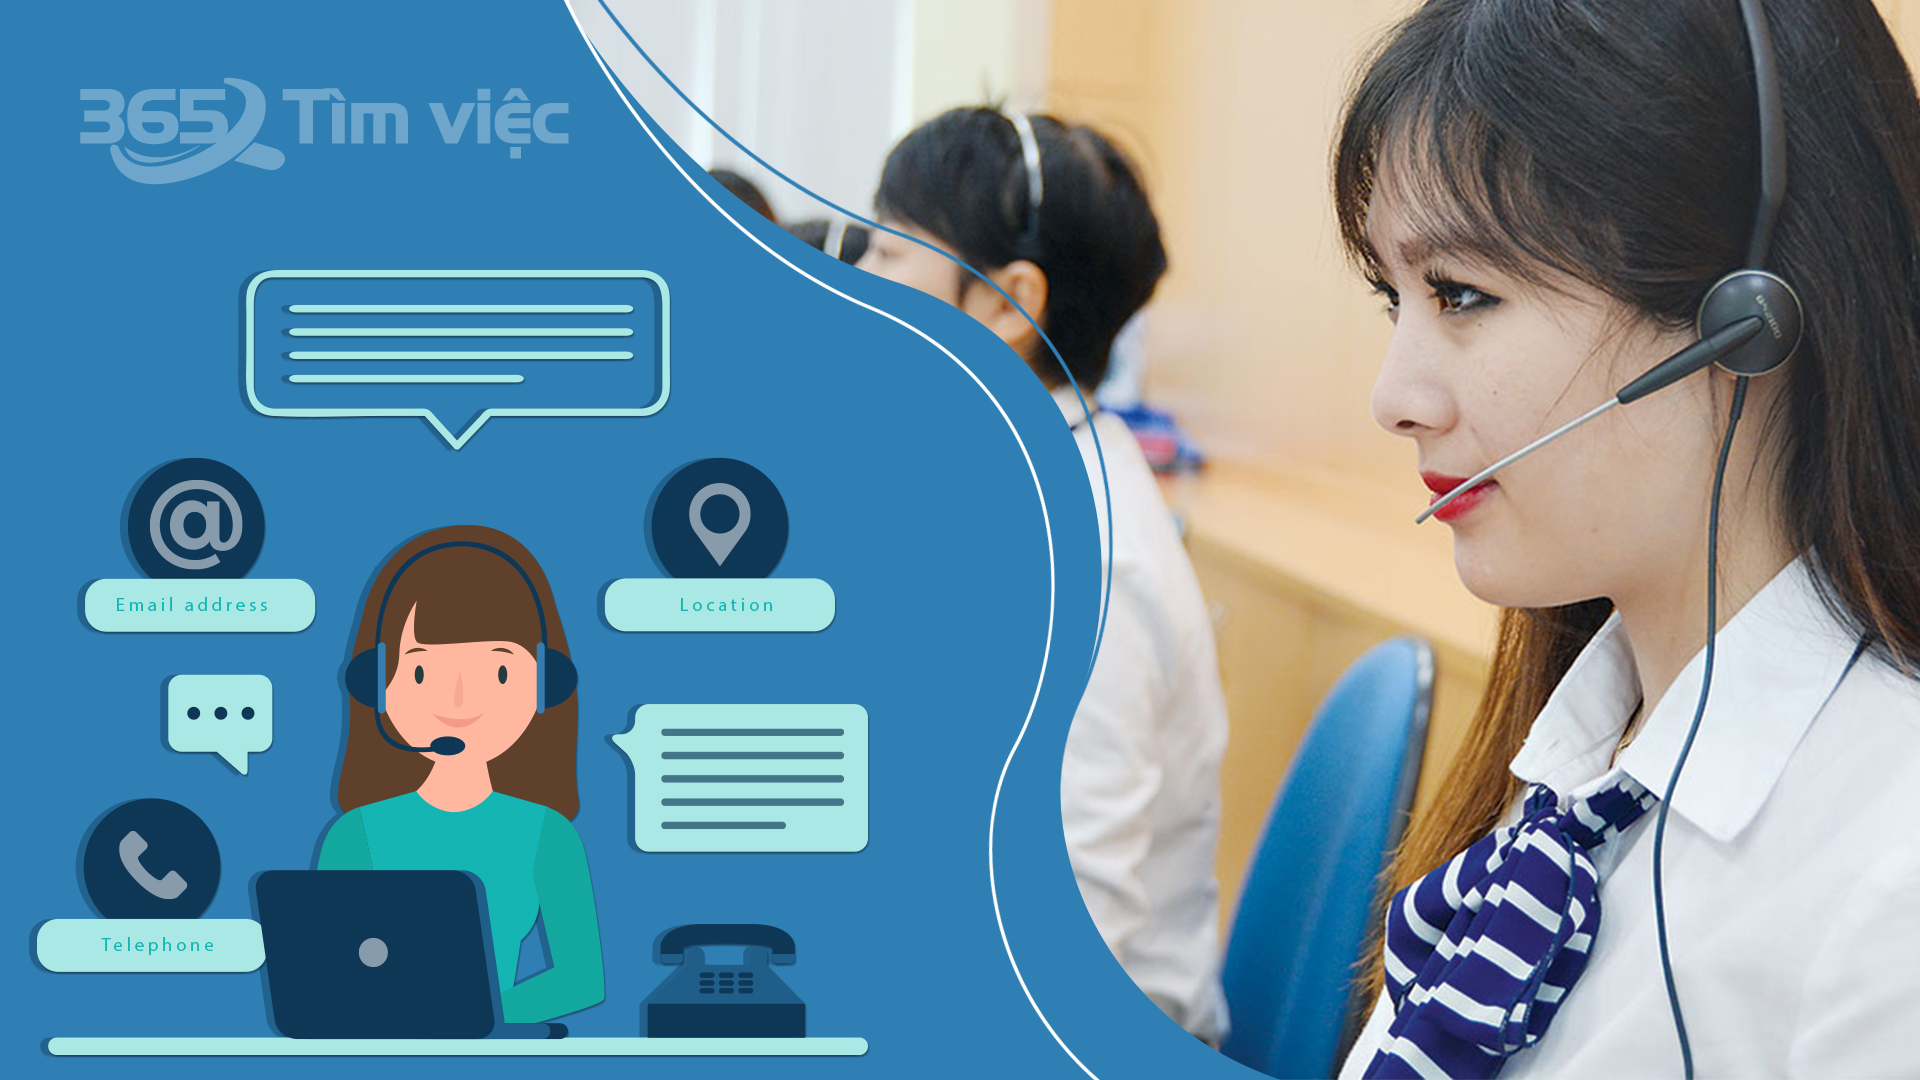 Hướng dẫn tìm việc làm chăm sóc khách hàng tại Bình Thuận trên timviec365.vn